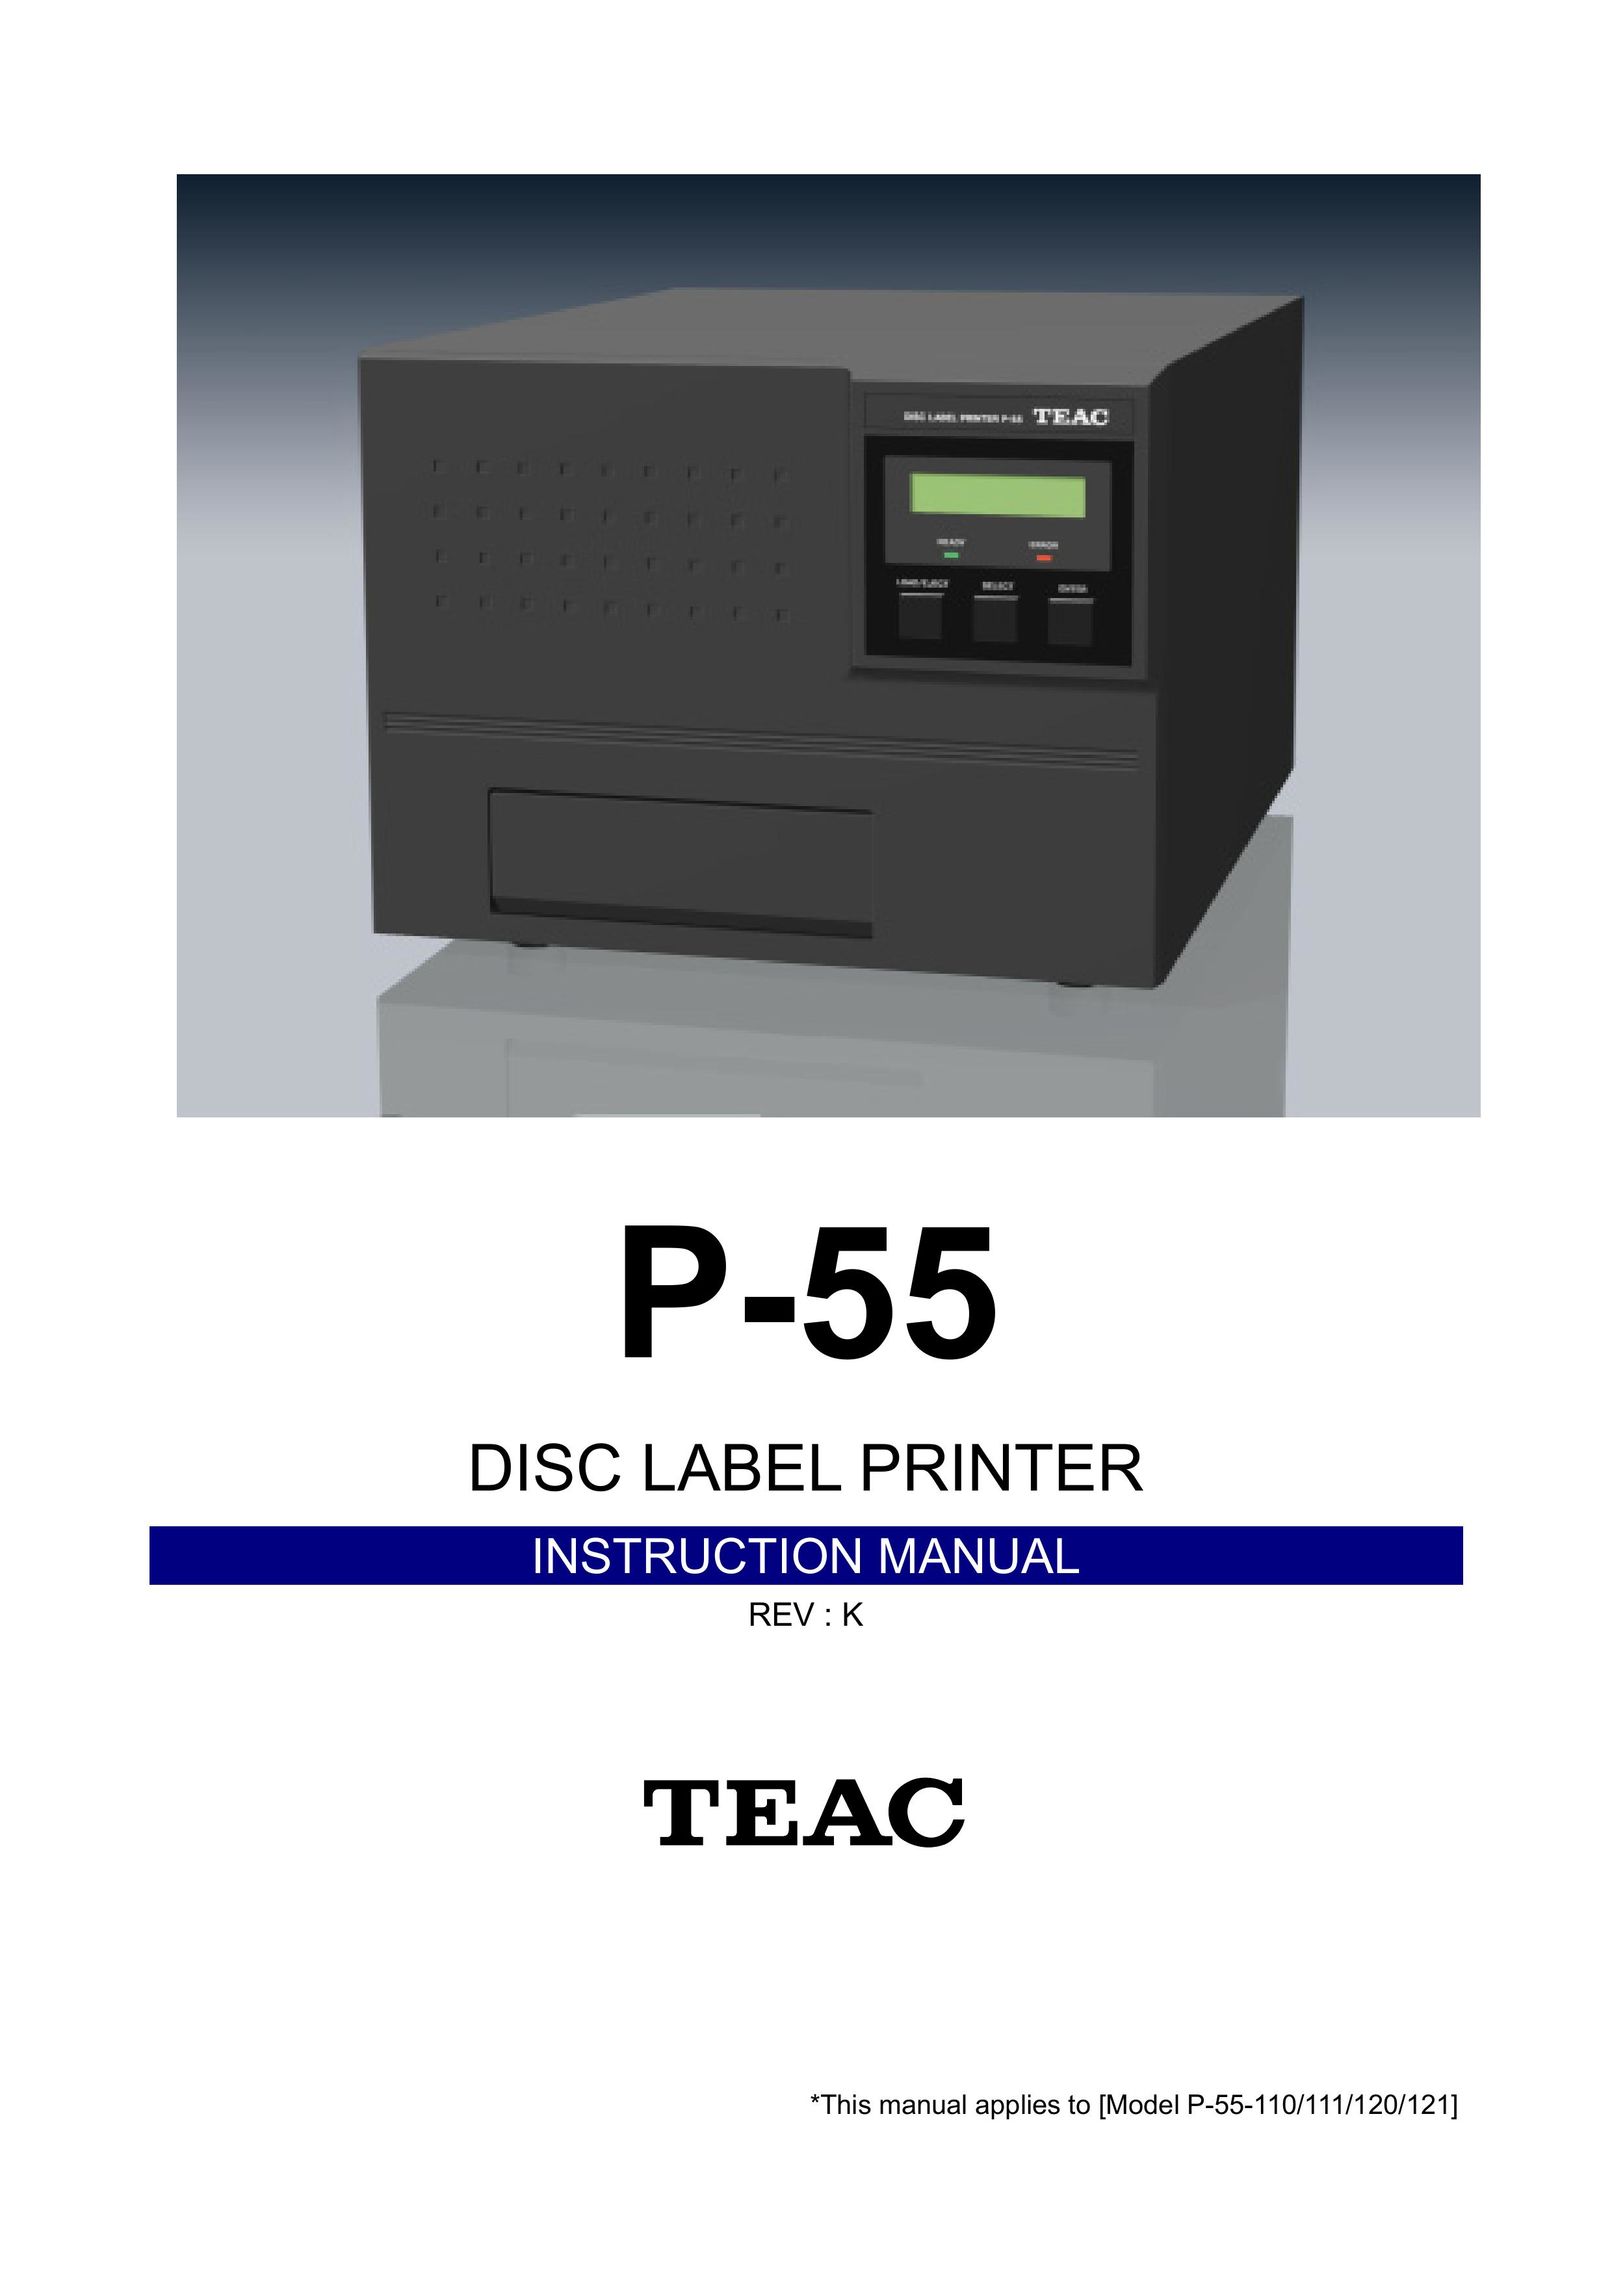 Teac P-55 Printer User Manual